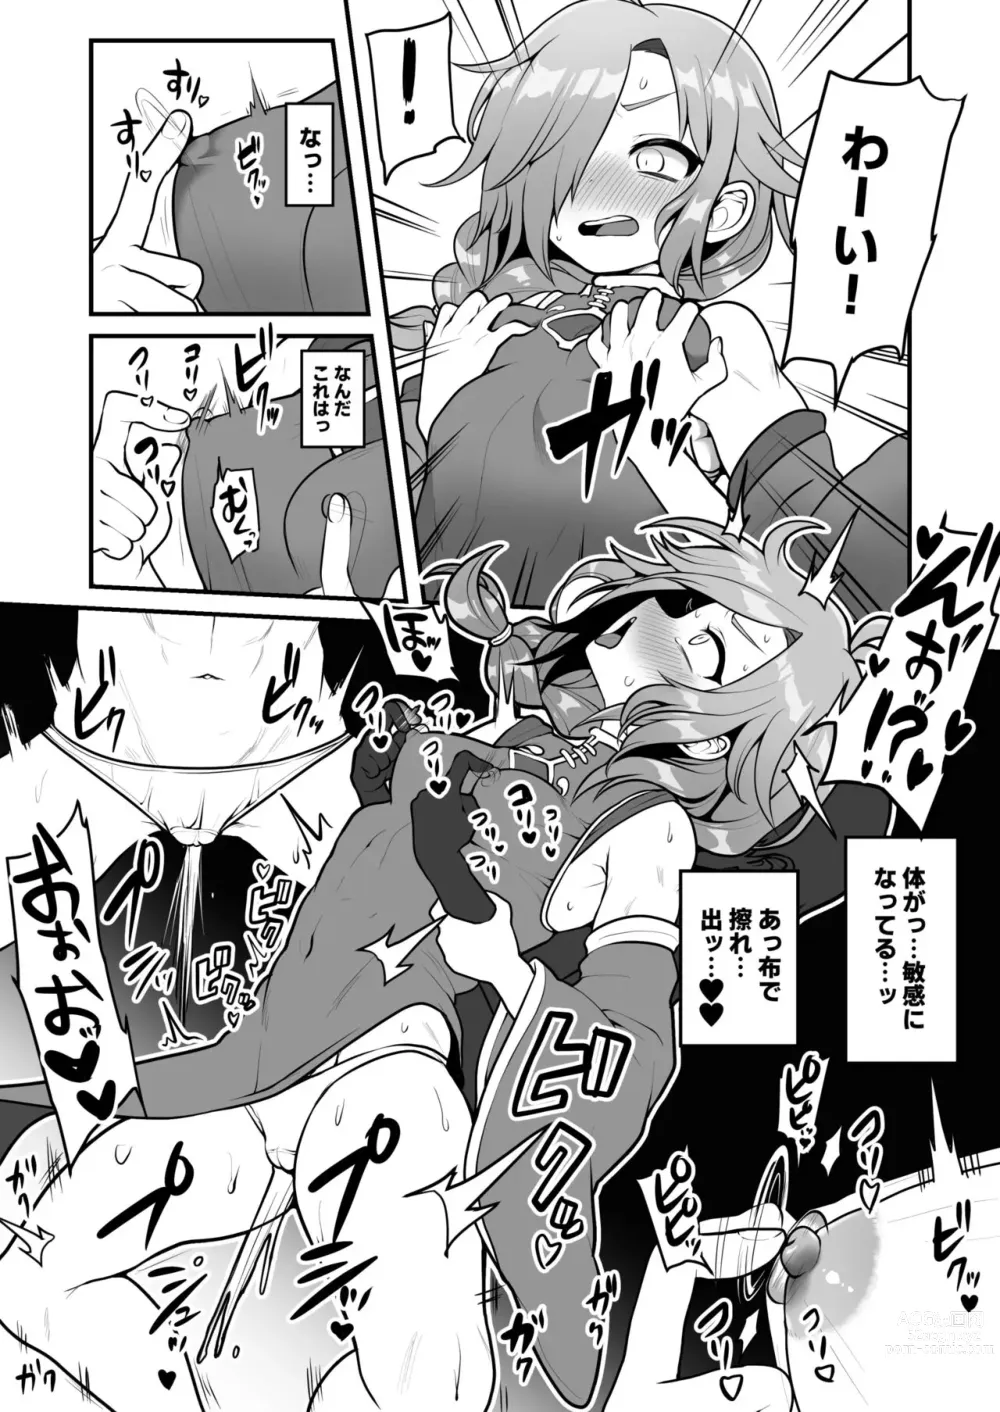 Page 3 of doujinshi Onnanoko no Manga desu